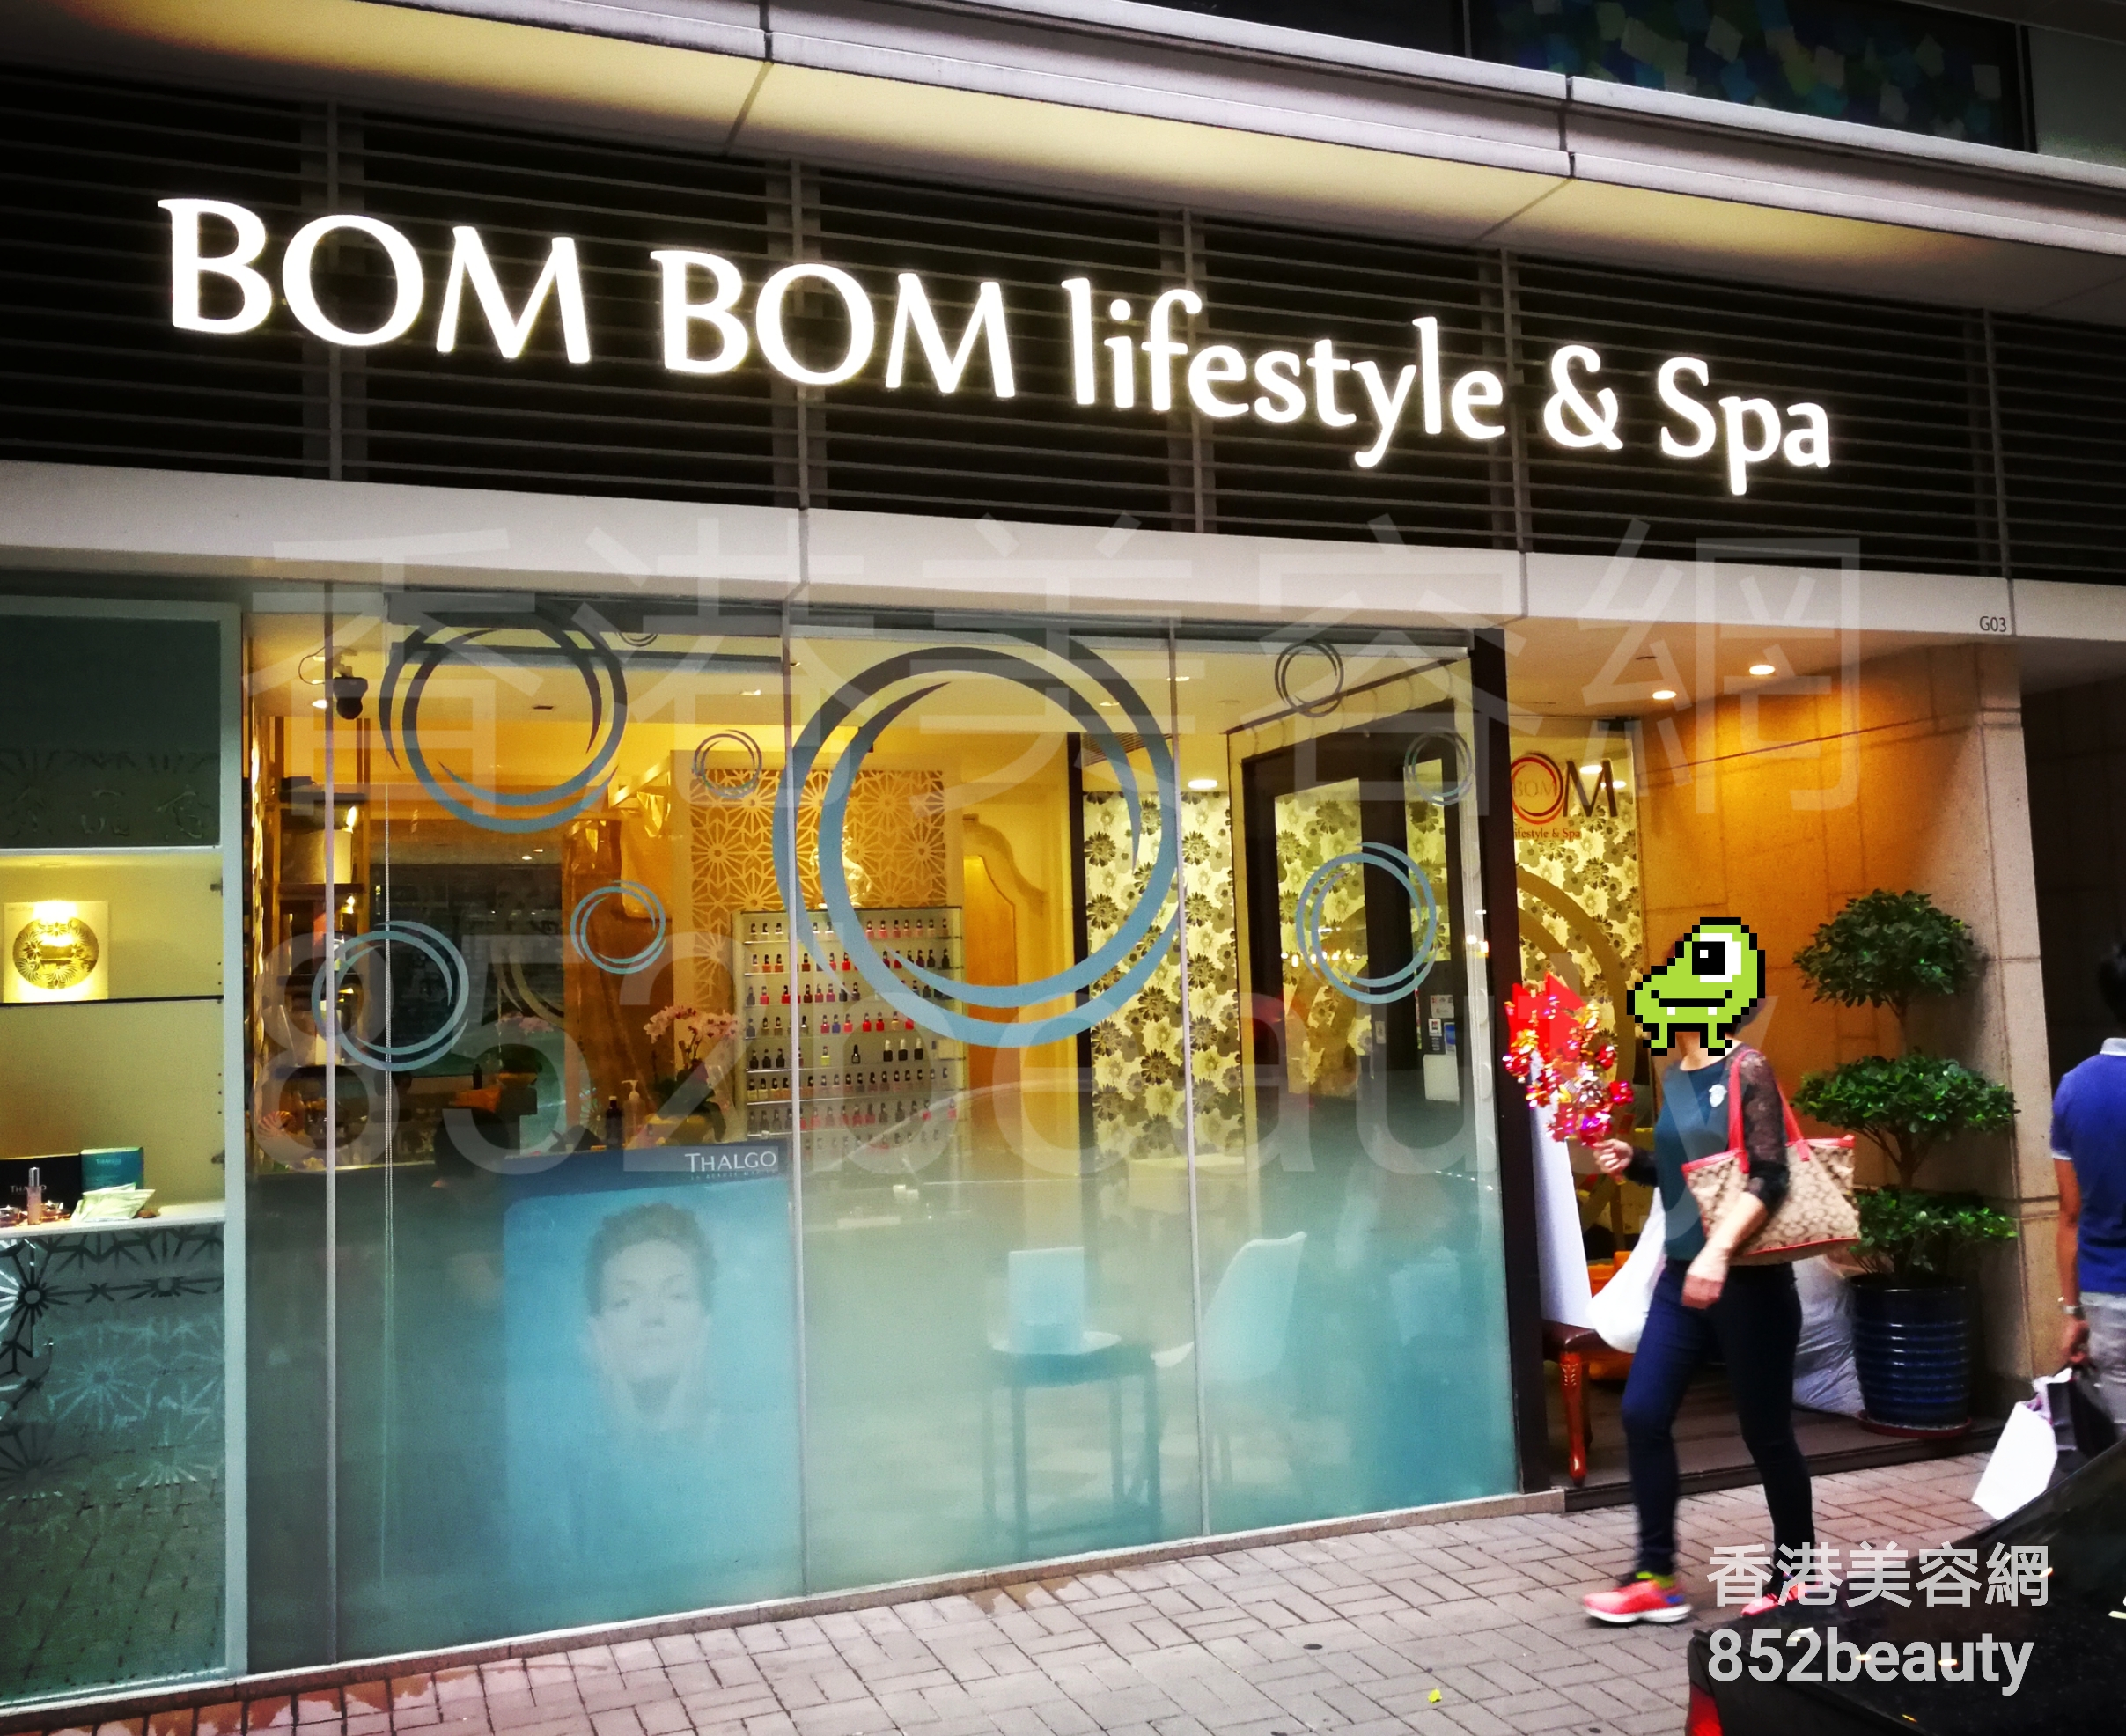 手腳護理: BOM BOM lifestyle & Spa